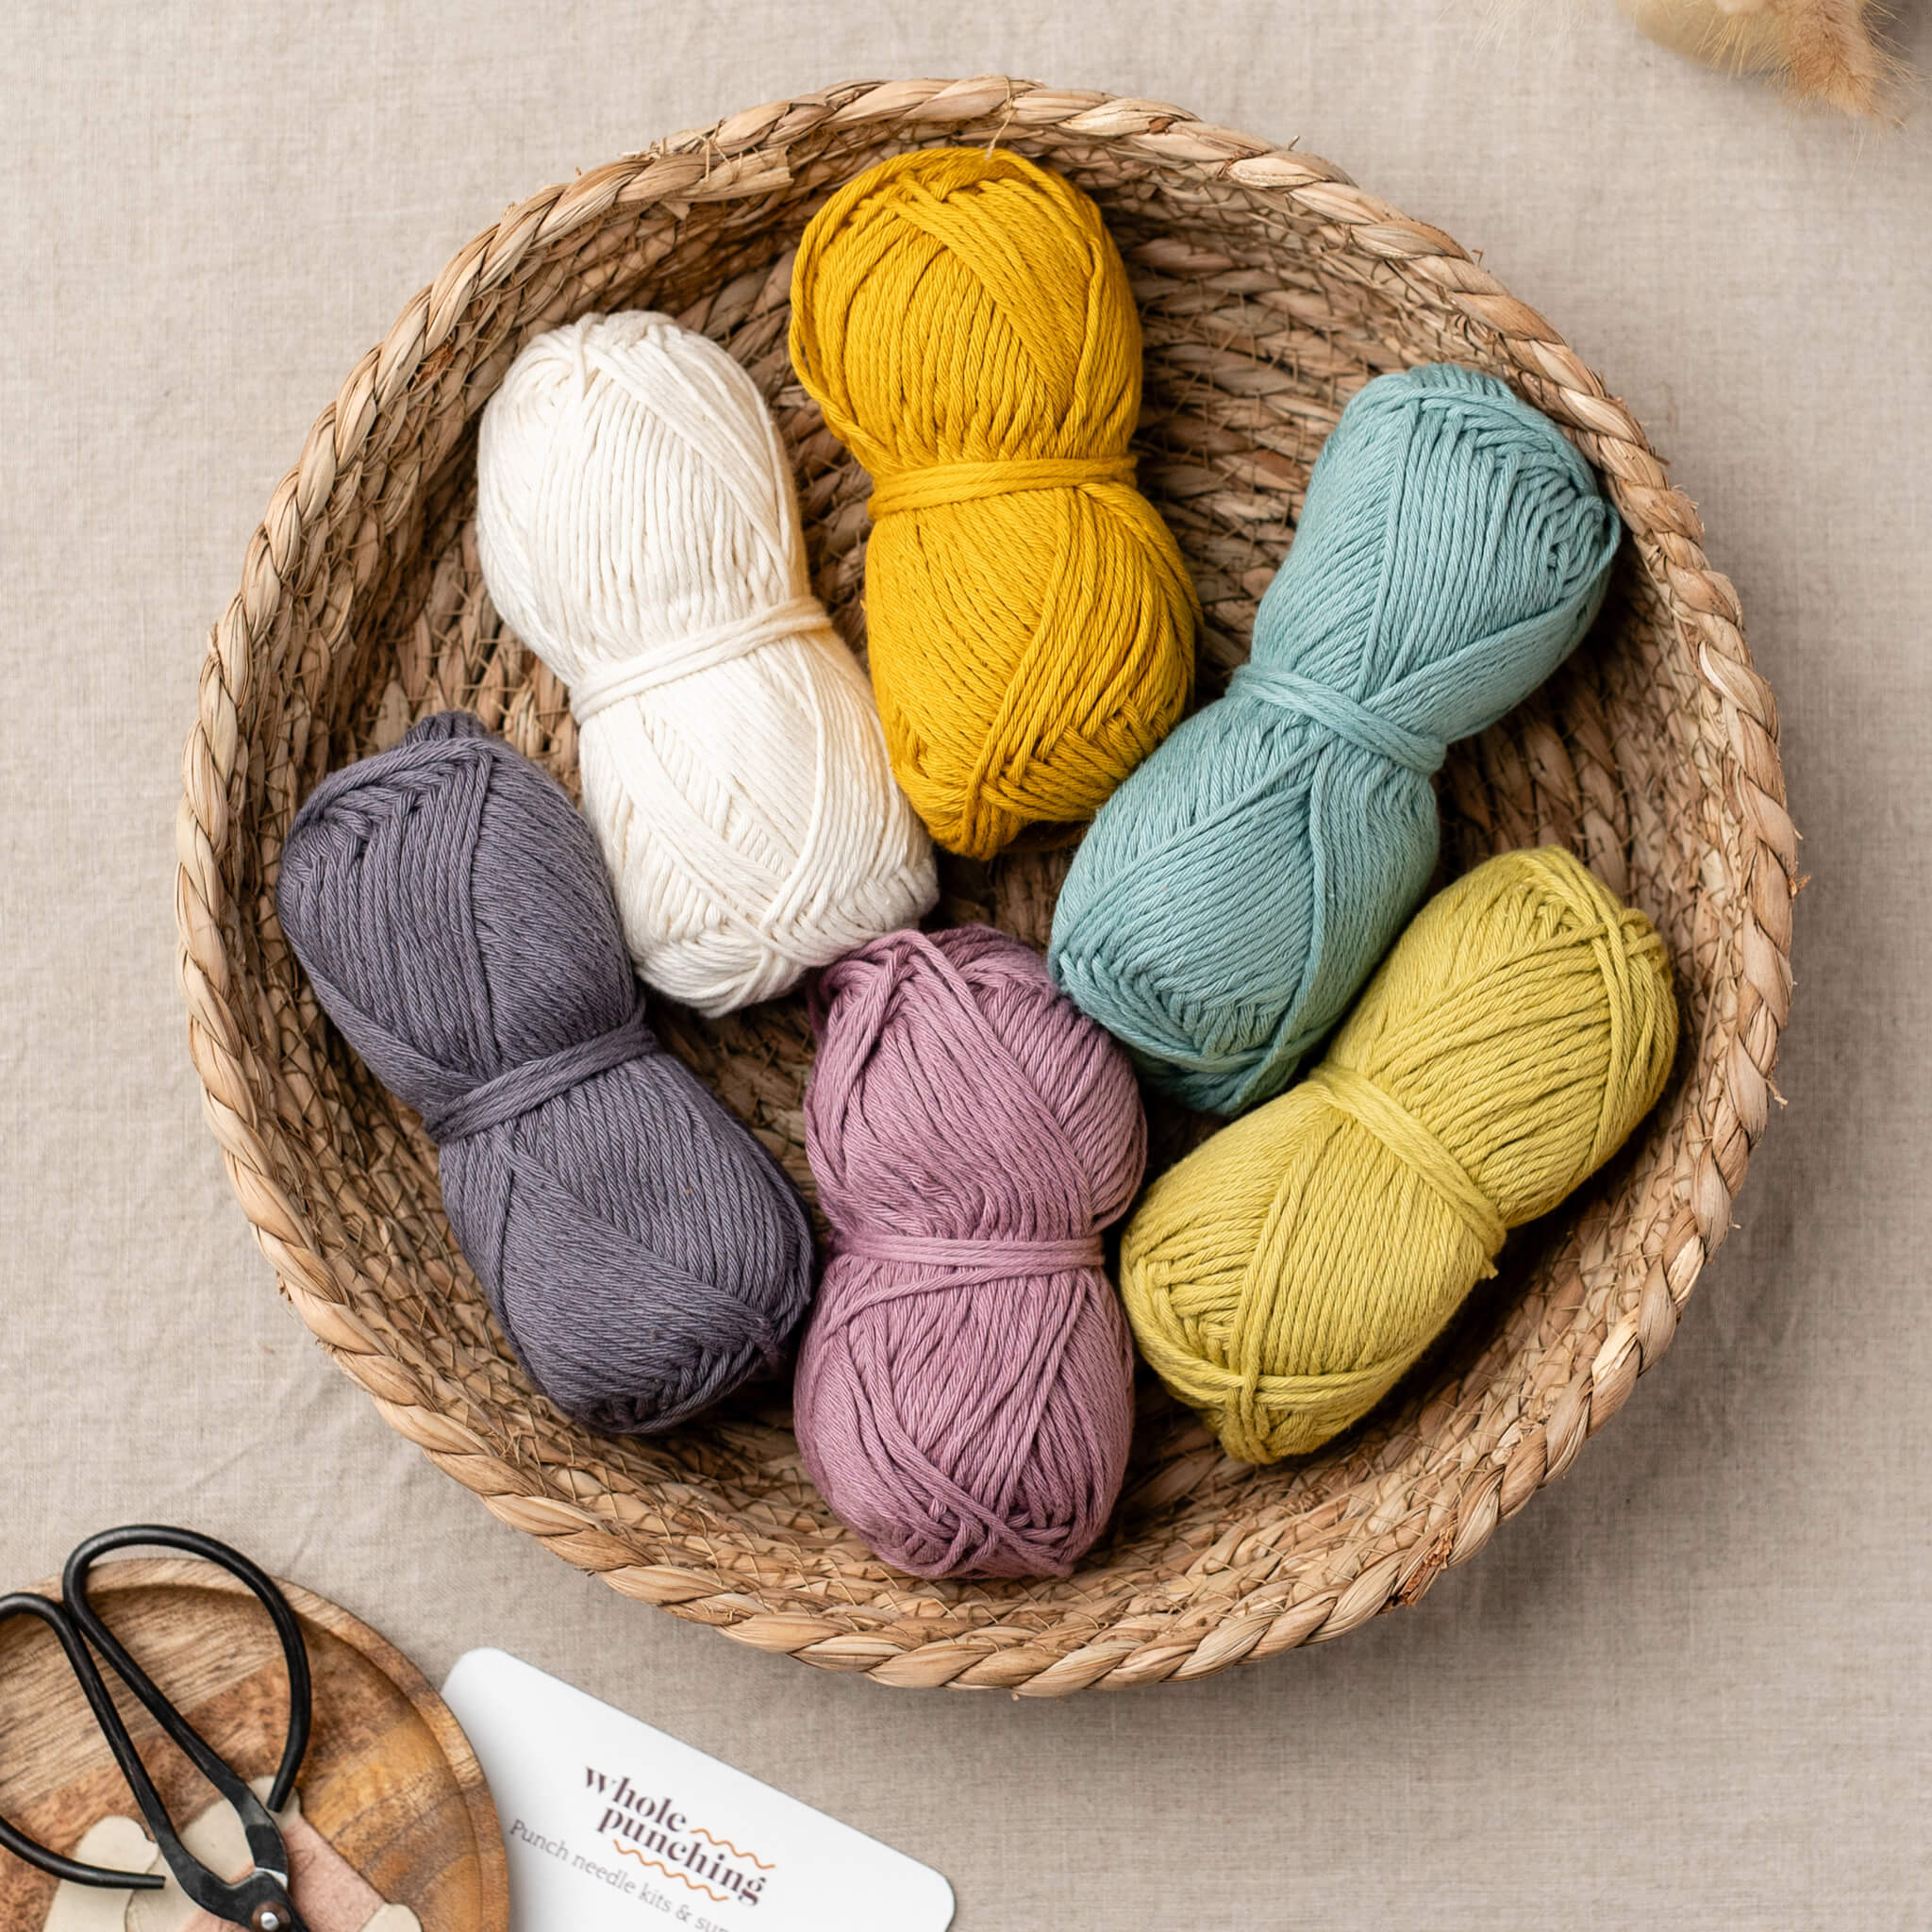 Brights - 100% cotton aran yarn palette (300g) – Whole Punching